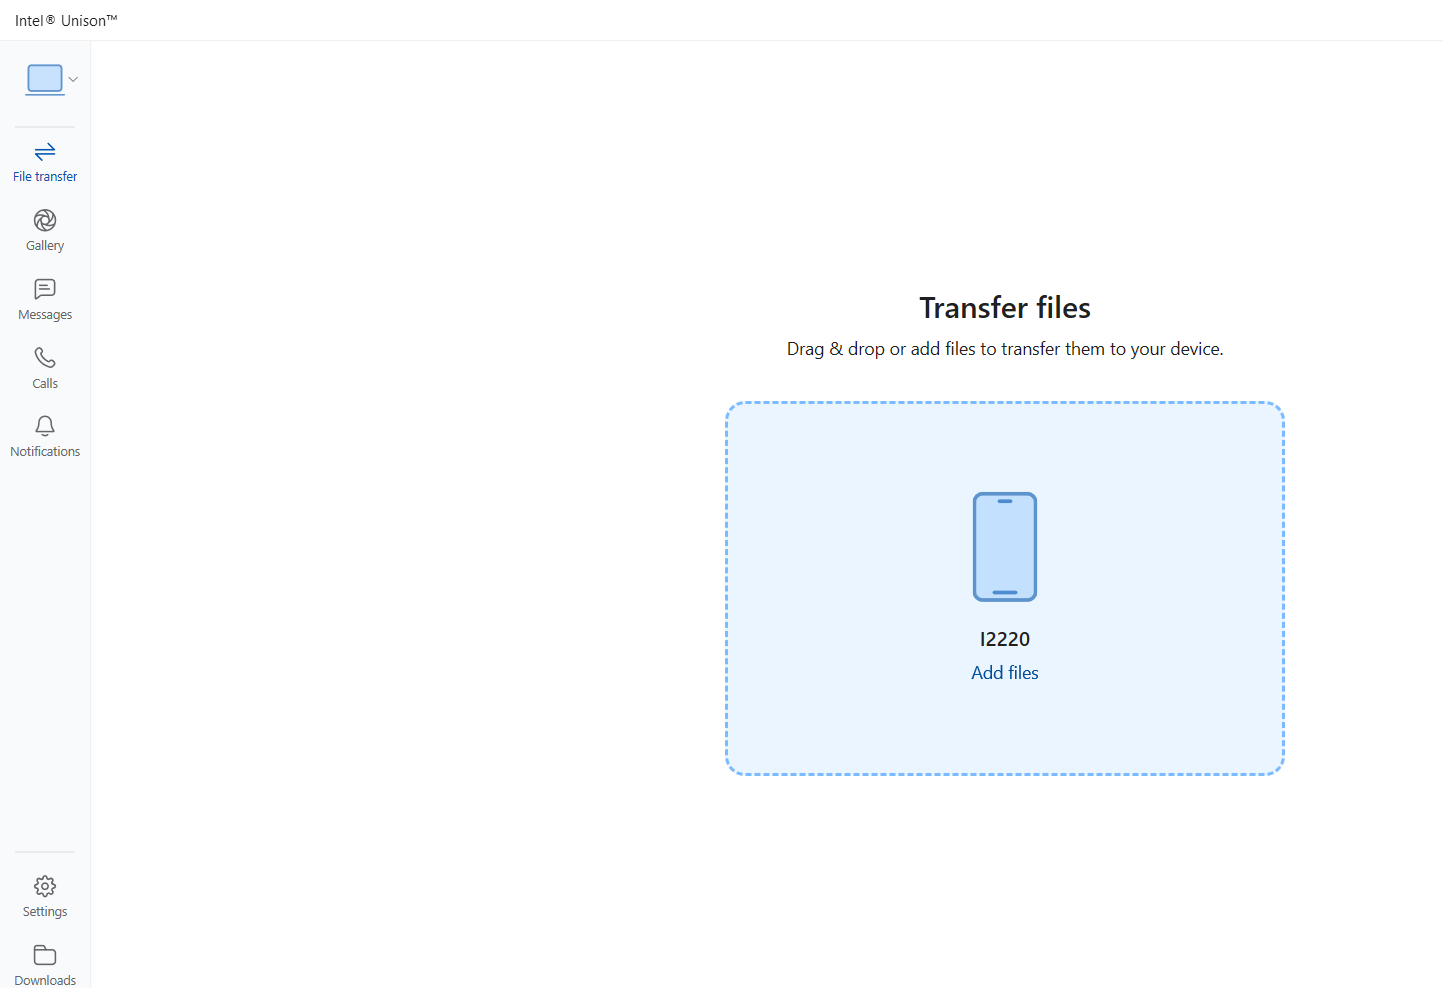 Captura de tela mostrando a opção de transferir arquivos usando Intel Unison